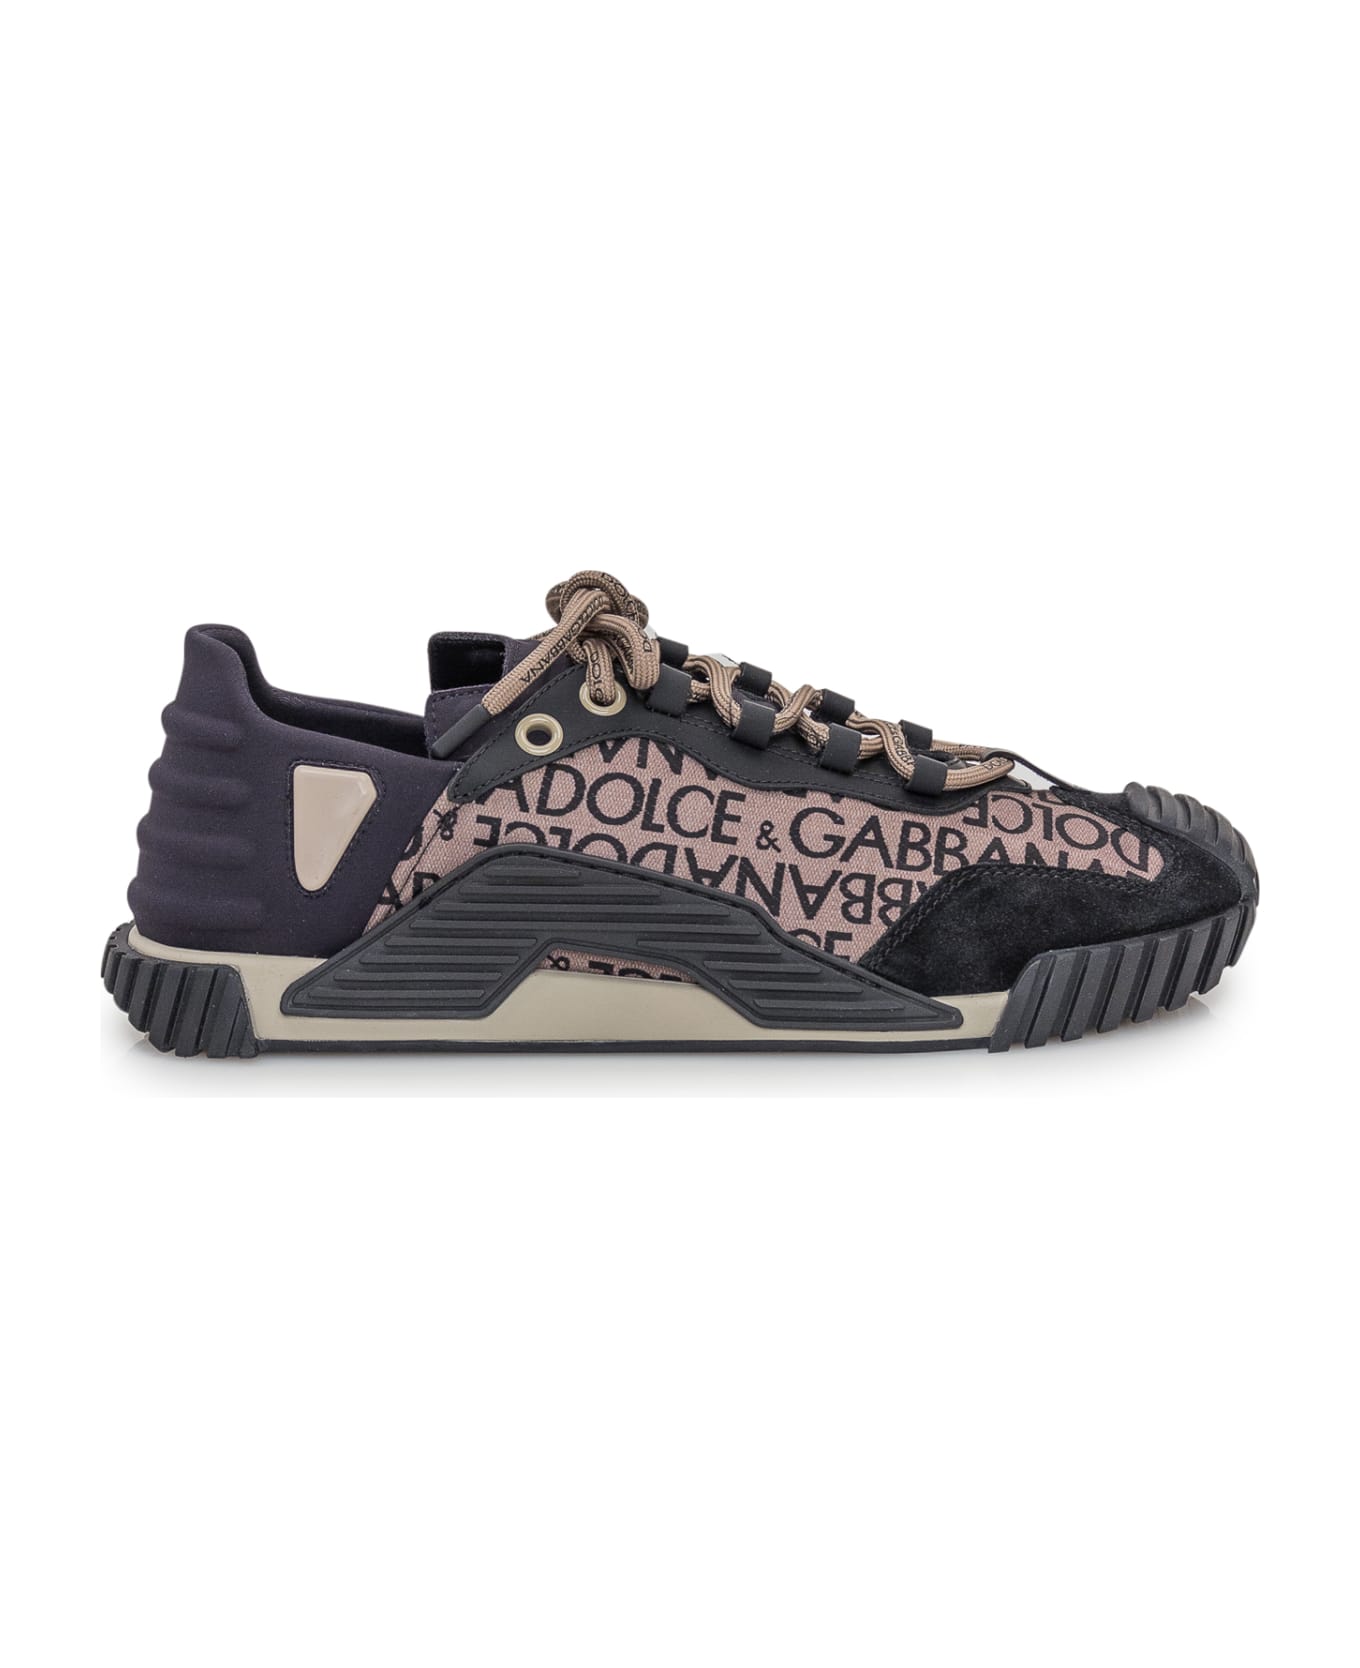 Dolce & Gabbana Ns1 Sneaker - DG MORO FDO BEIGE